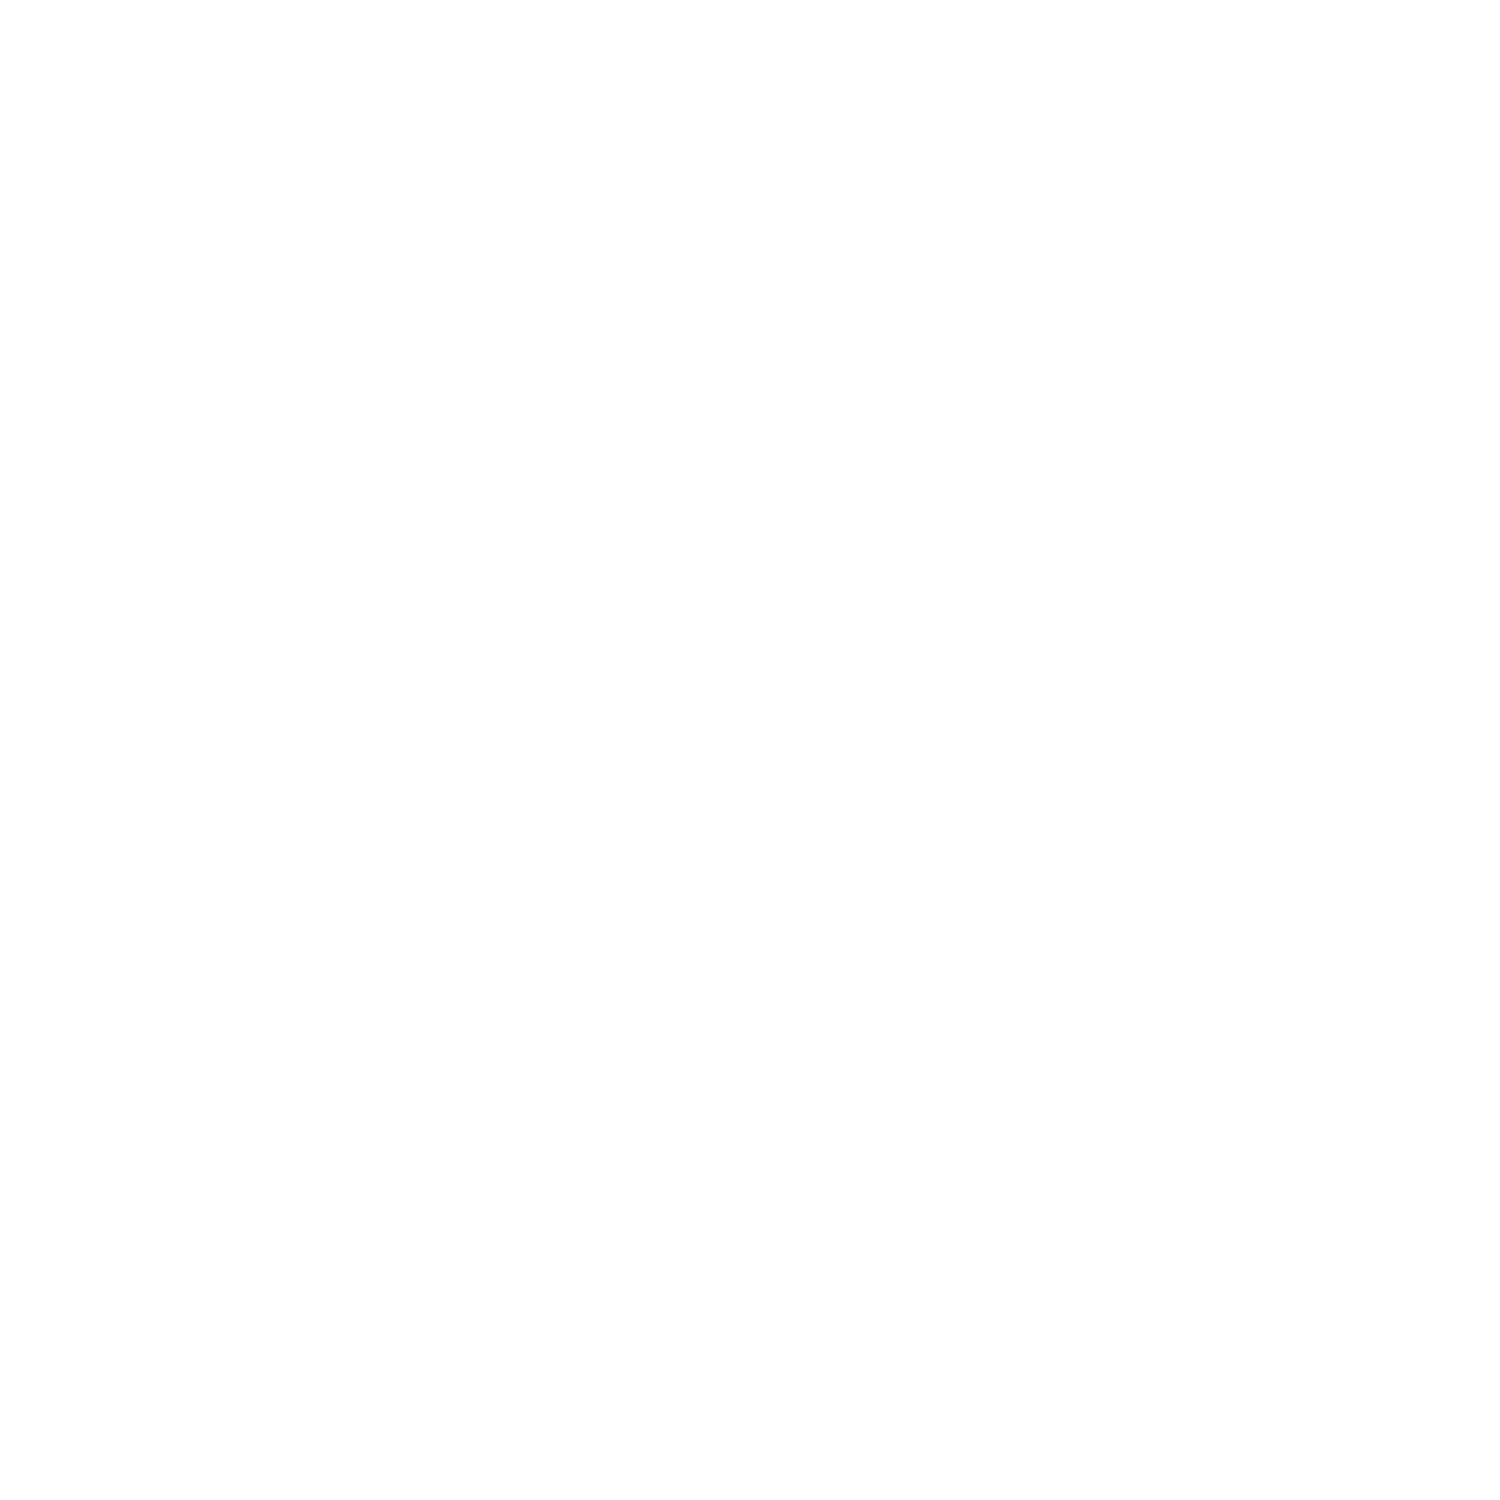 NextGen Alumni